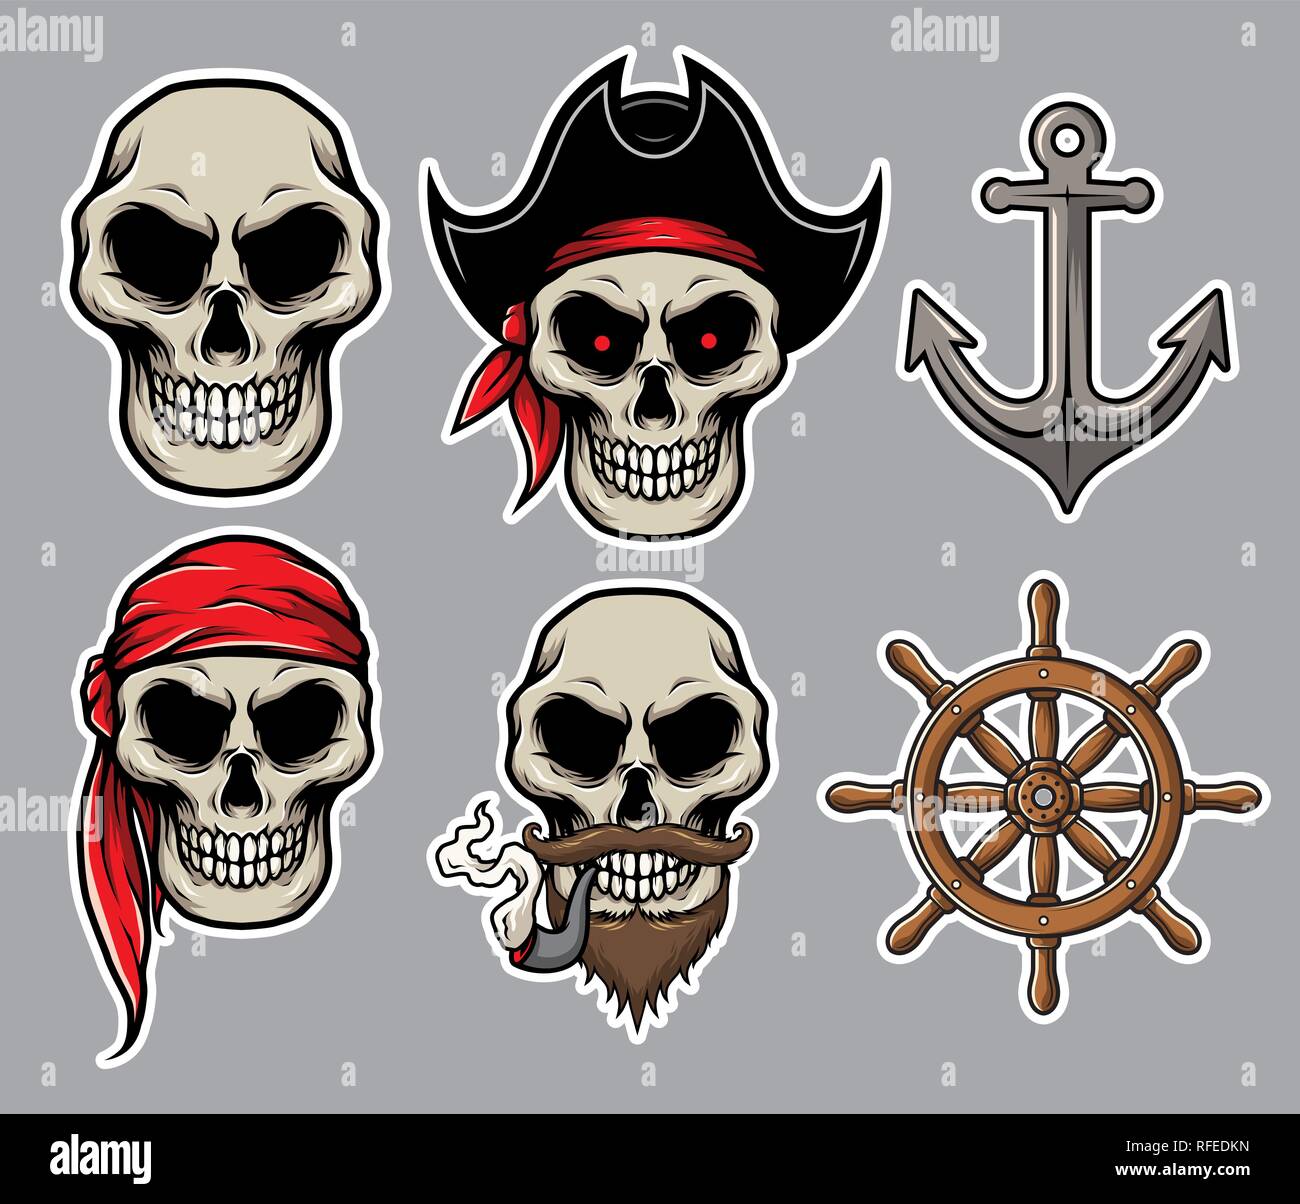 Satz von Jolly Roger piraten Totenkopf mit Piraten Elemente, Anker, Ruder, Seemann-Kapitän Hat, Rohr, Schnurrbart und Bart Illustration Vektor. Einfach zu EDI Stock Vektor